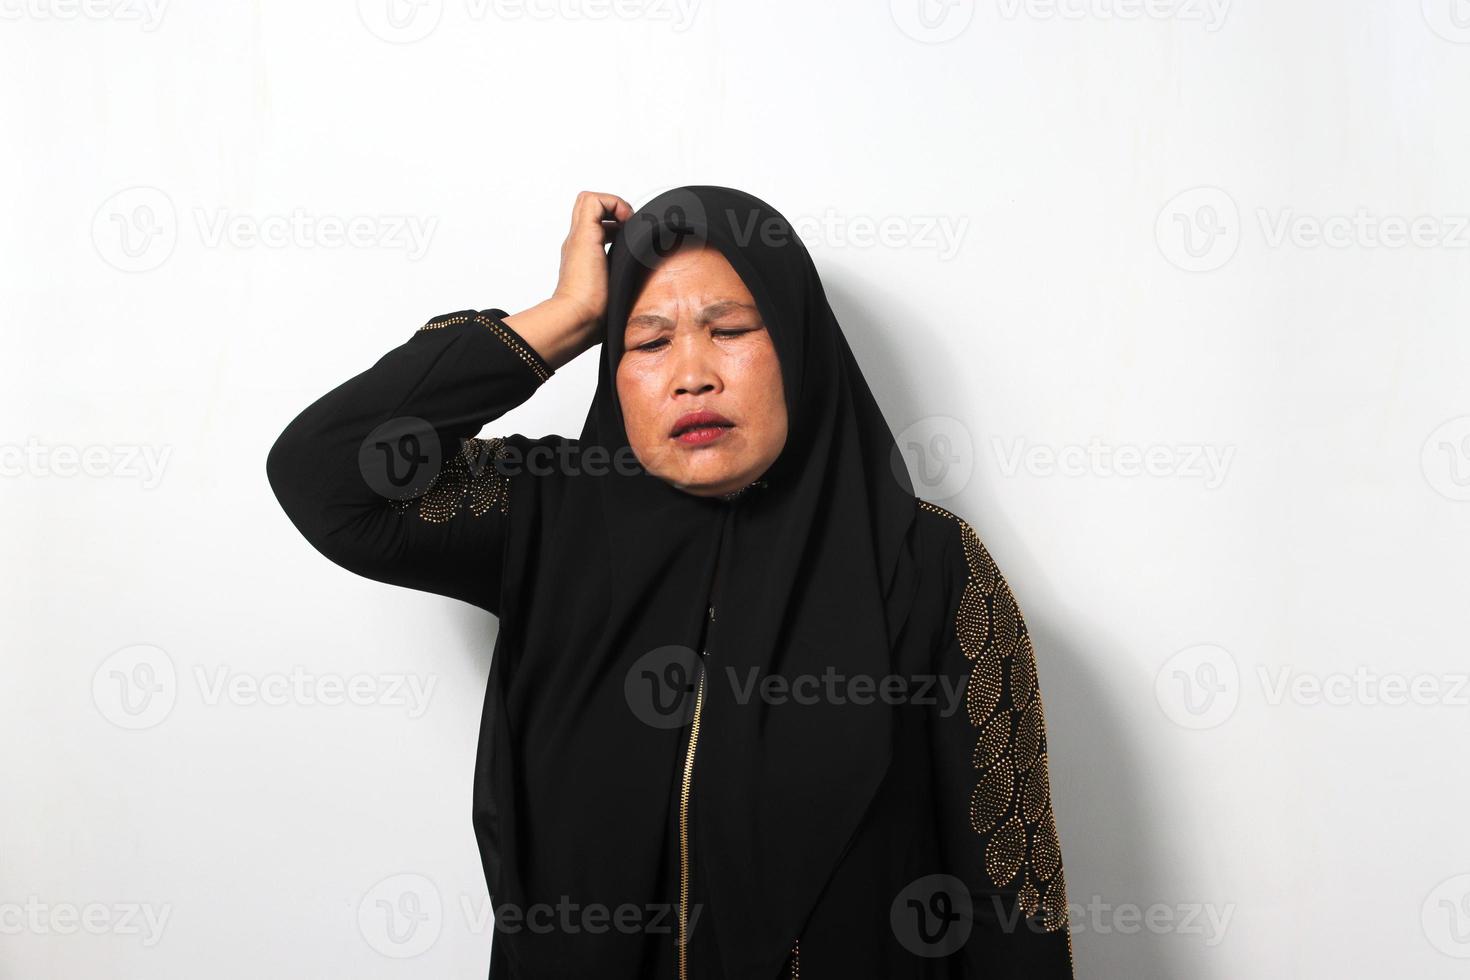 fundersam mitten åldrig asiatisk kvinnor bär hijab tänkande med hand på huvud känner förvirrad foto